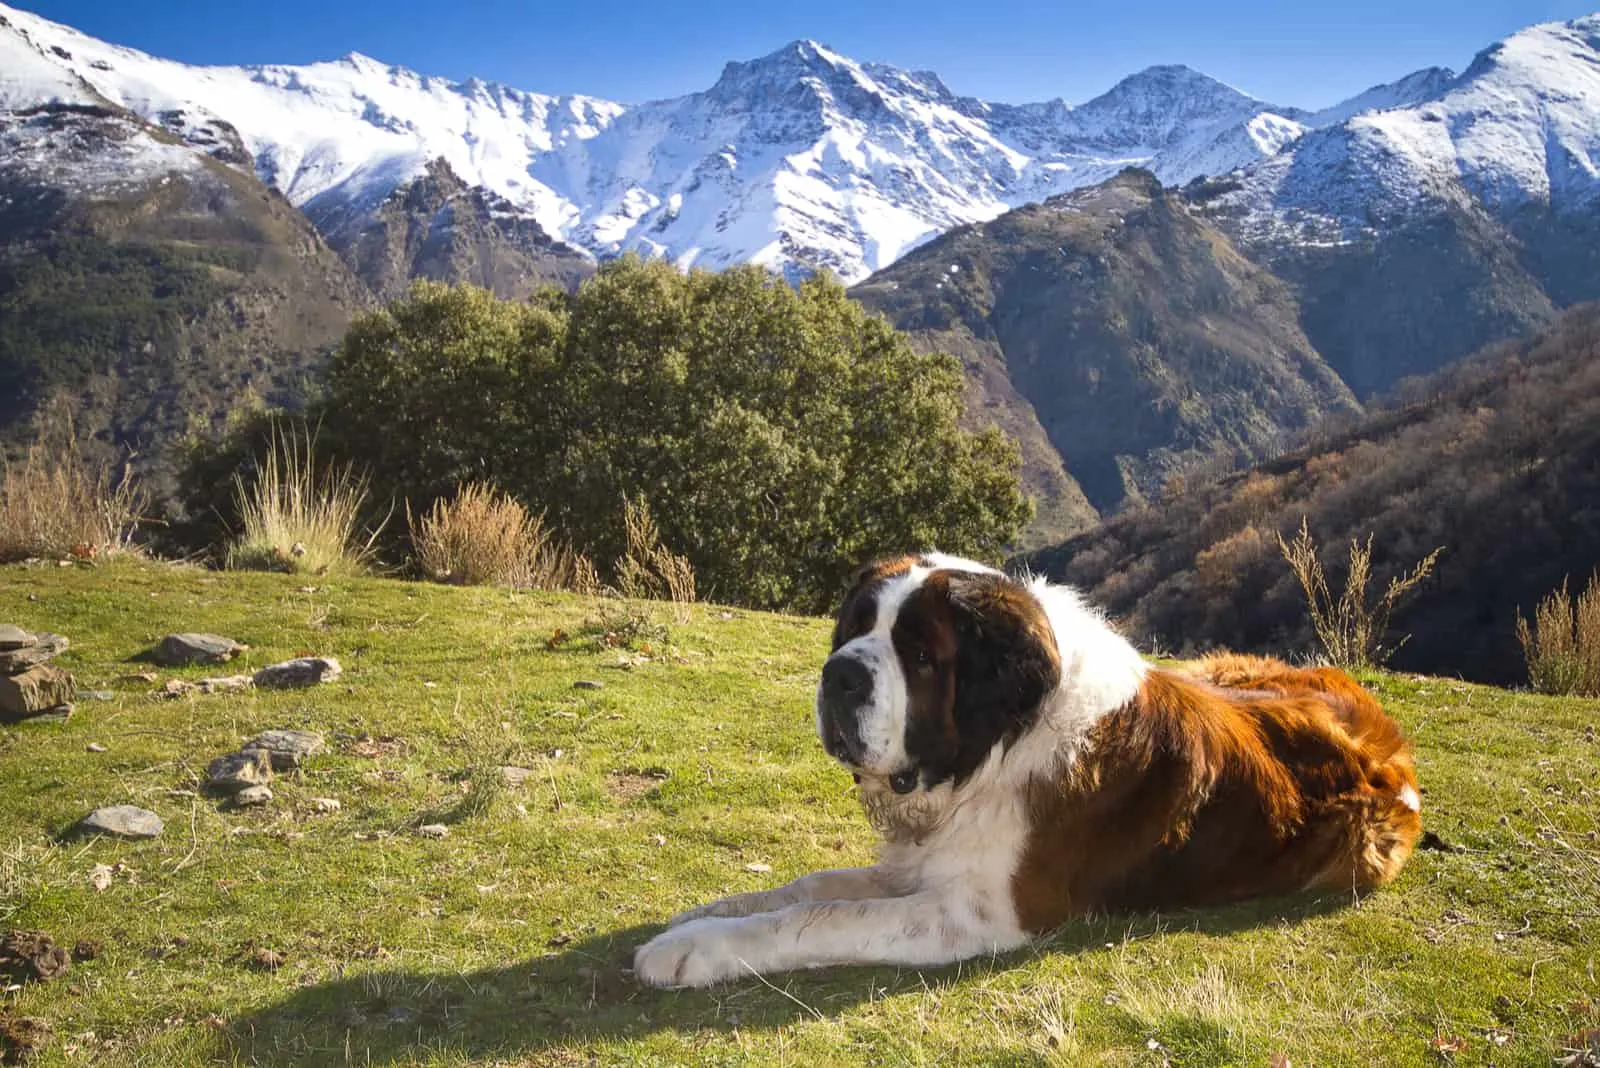 Saint Bernard dog lies on the mountain